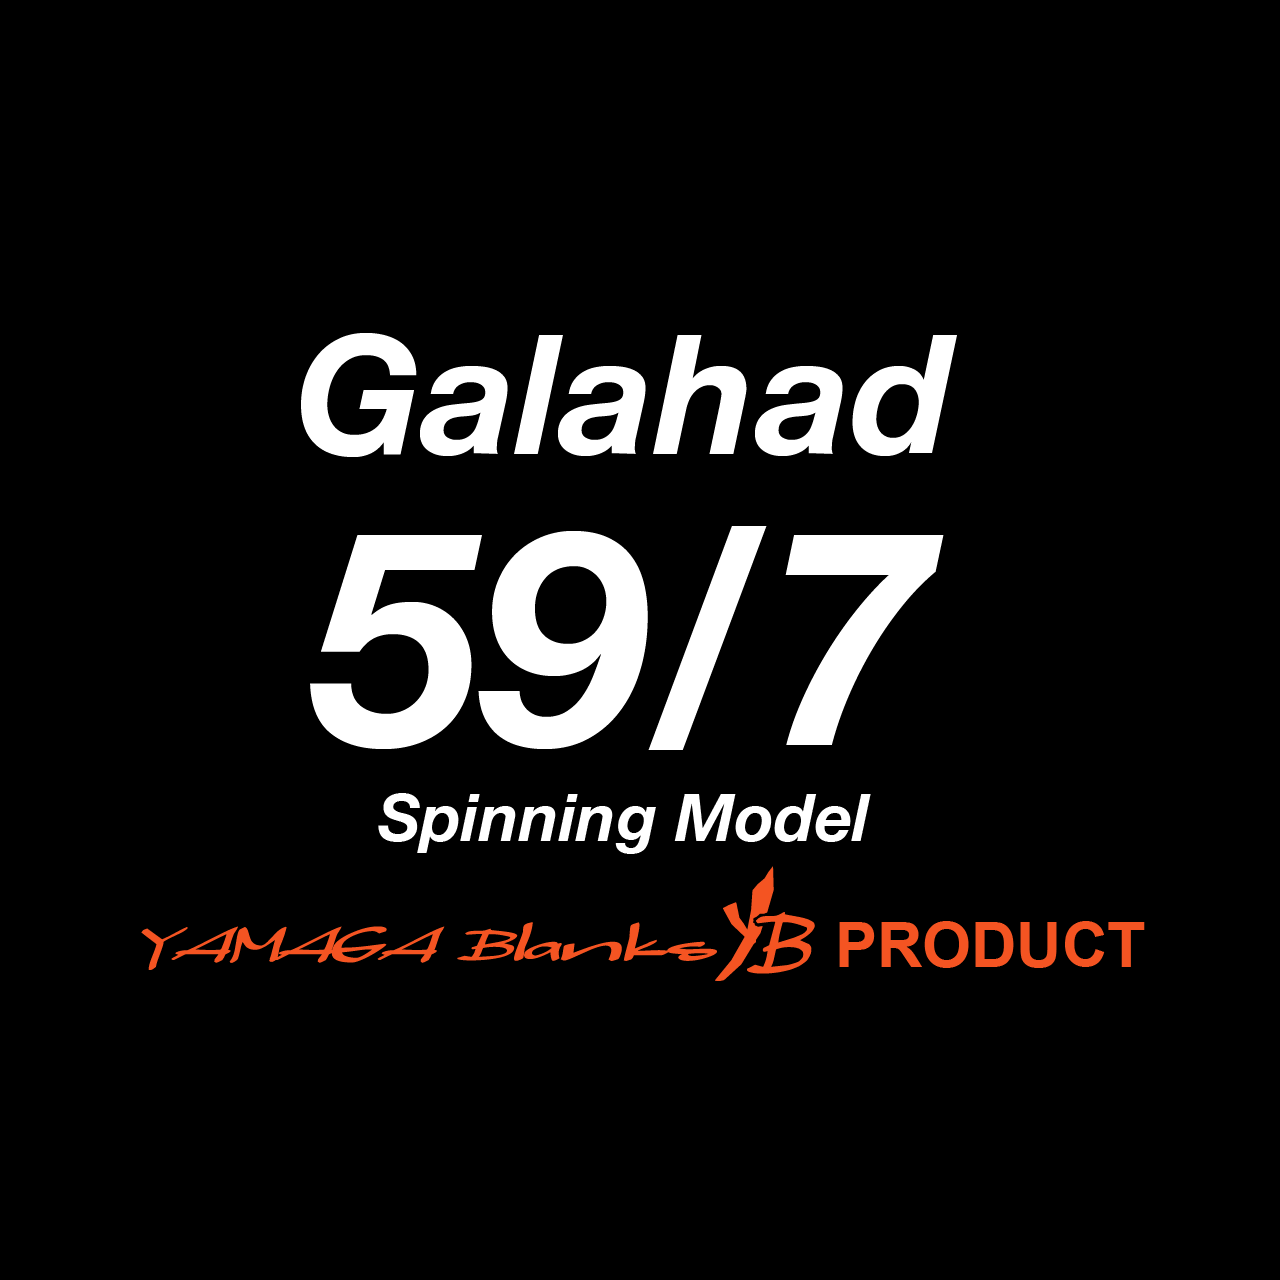 ギャラハドトラベックス 595S（Spinning Model） | WebShop